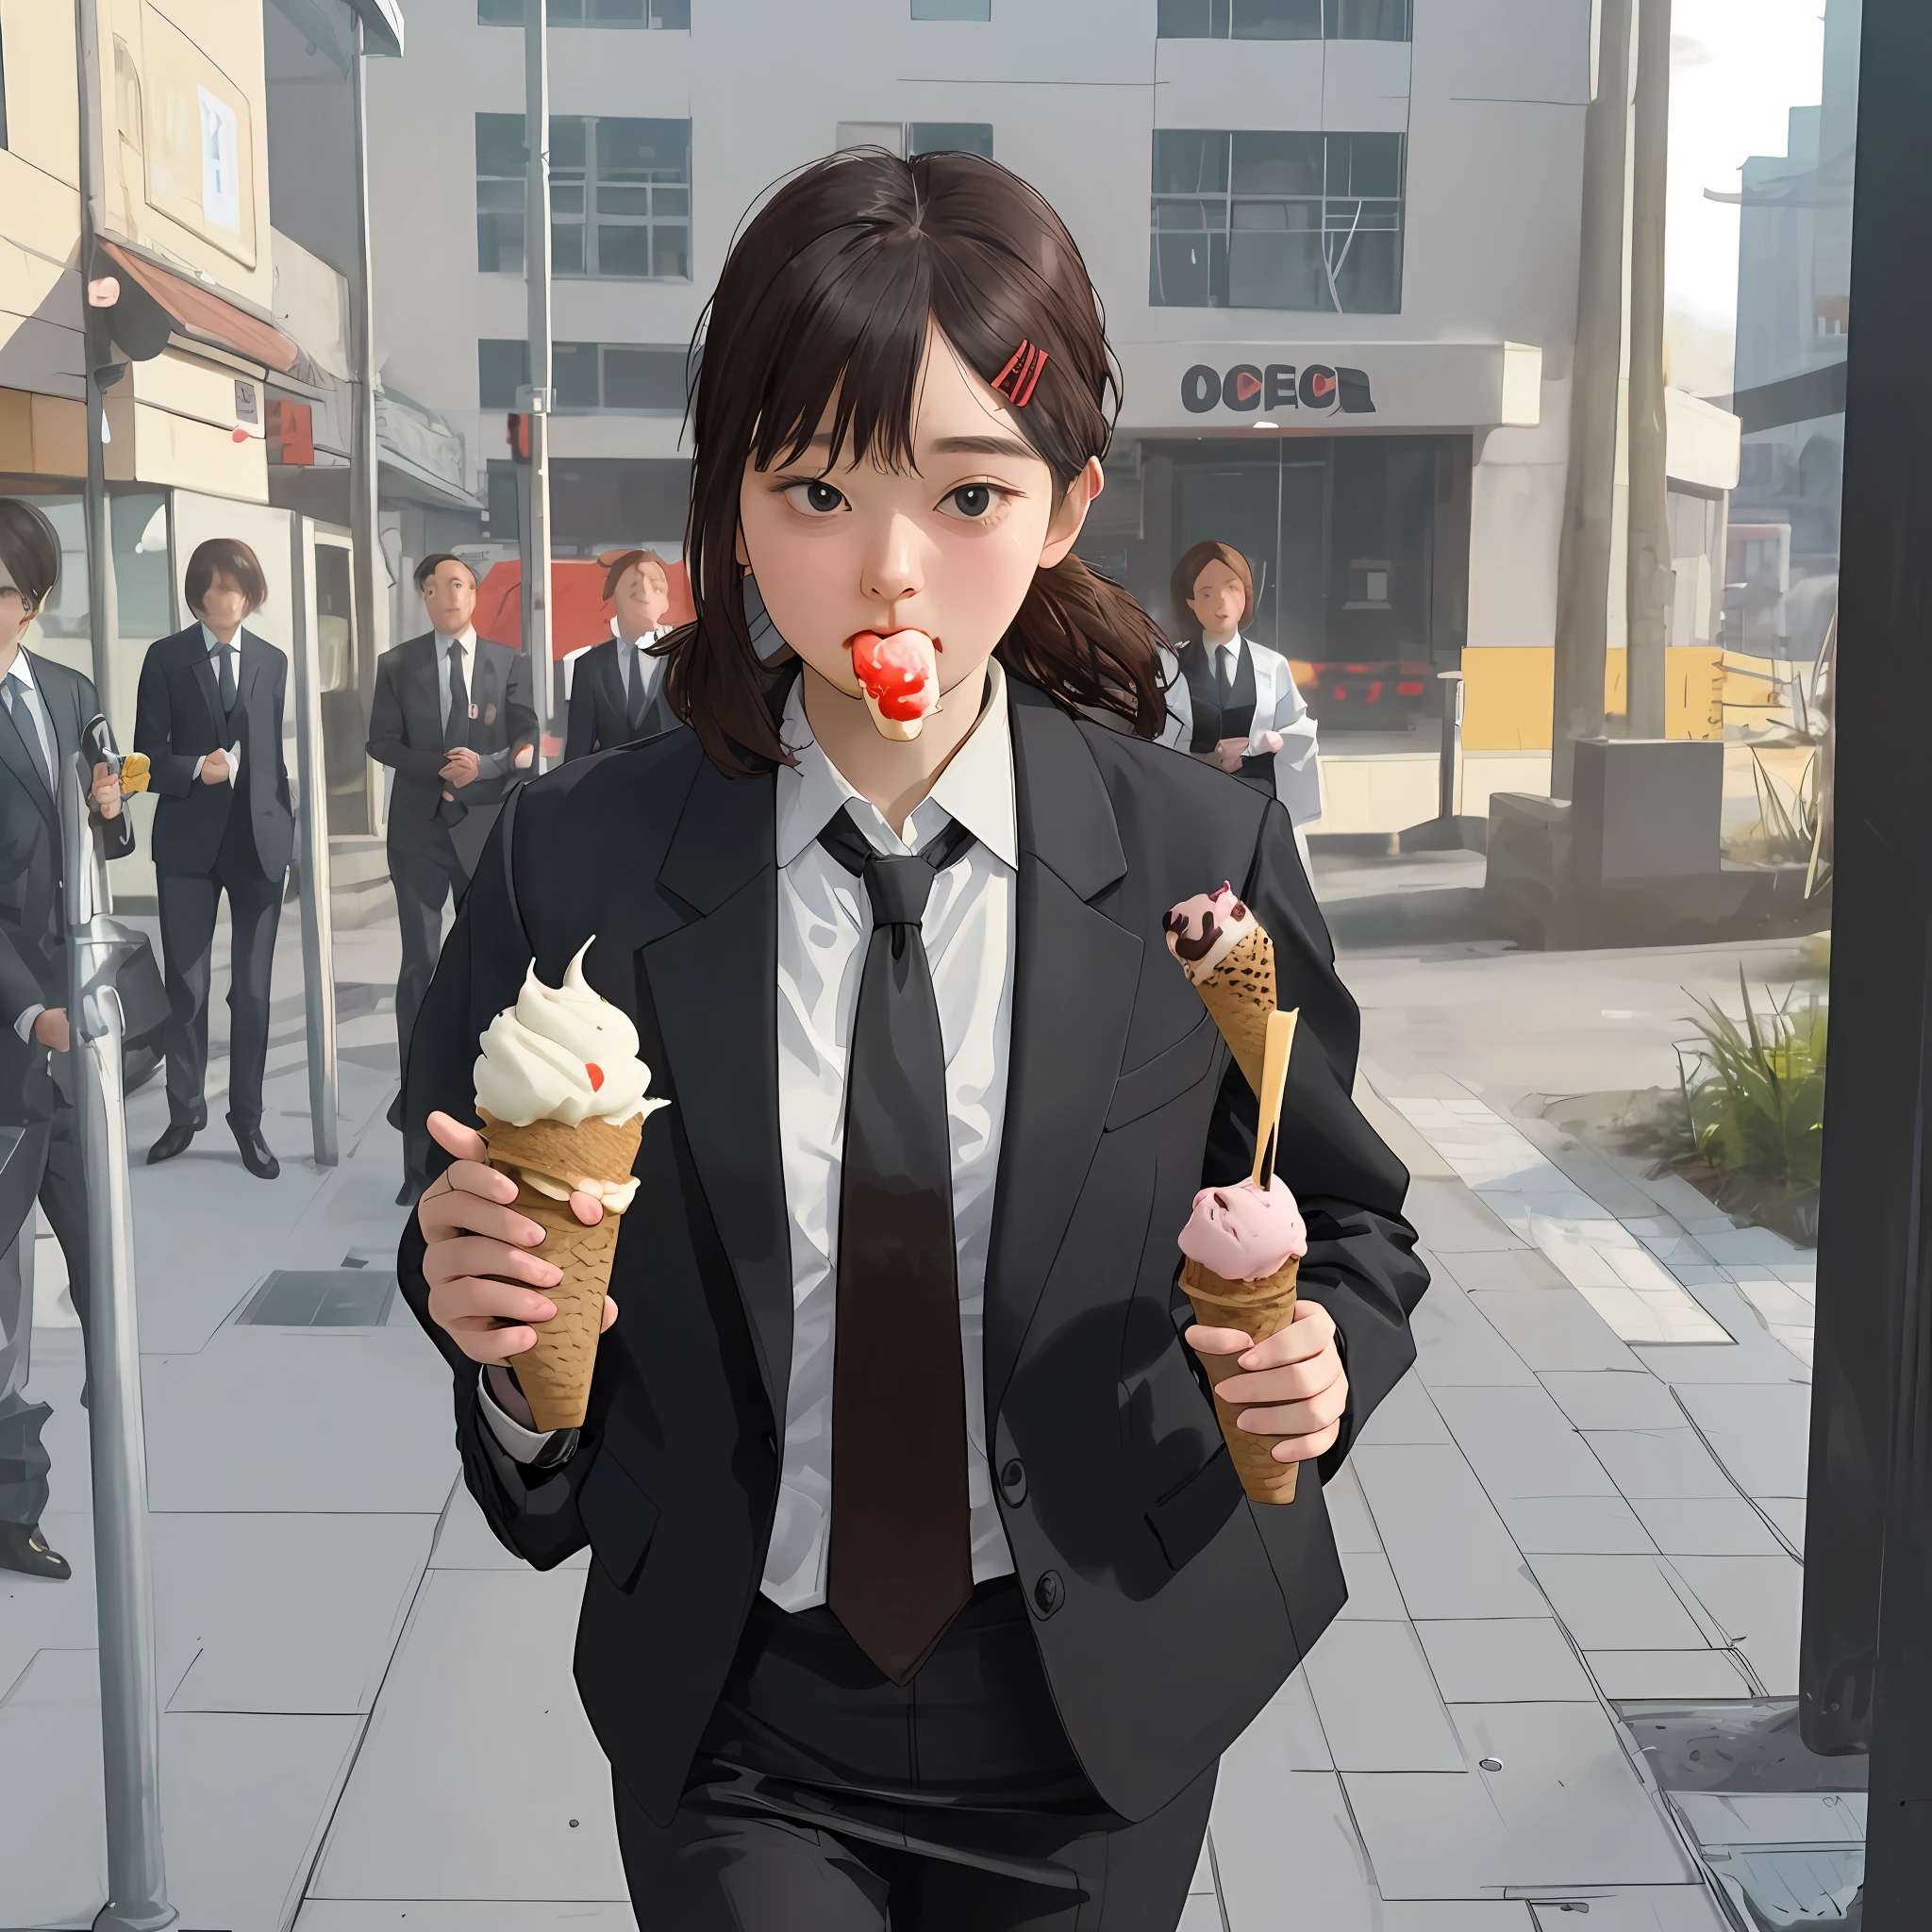 (1 名女孩) 害羞地吃冰淇淋, 穿着办公室西装, 夹克和领带, 走在街上, 非常详细, 高清.